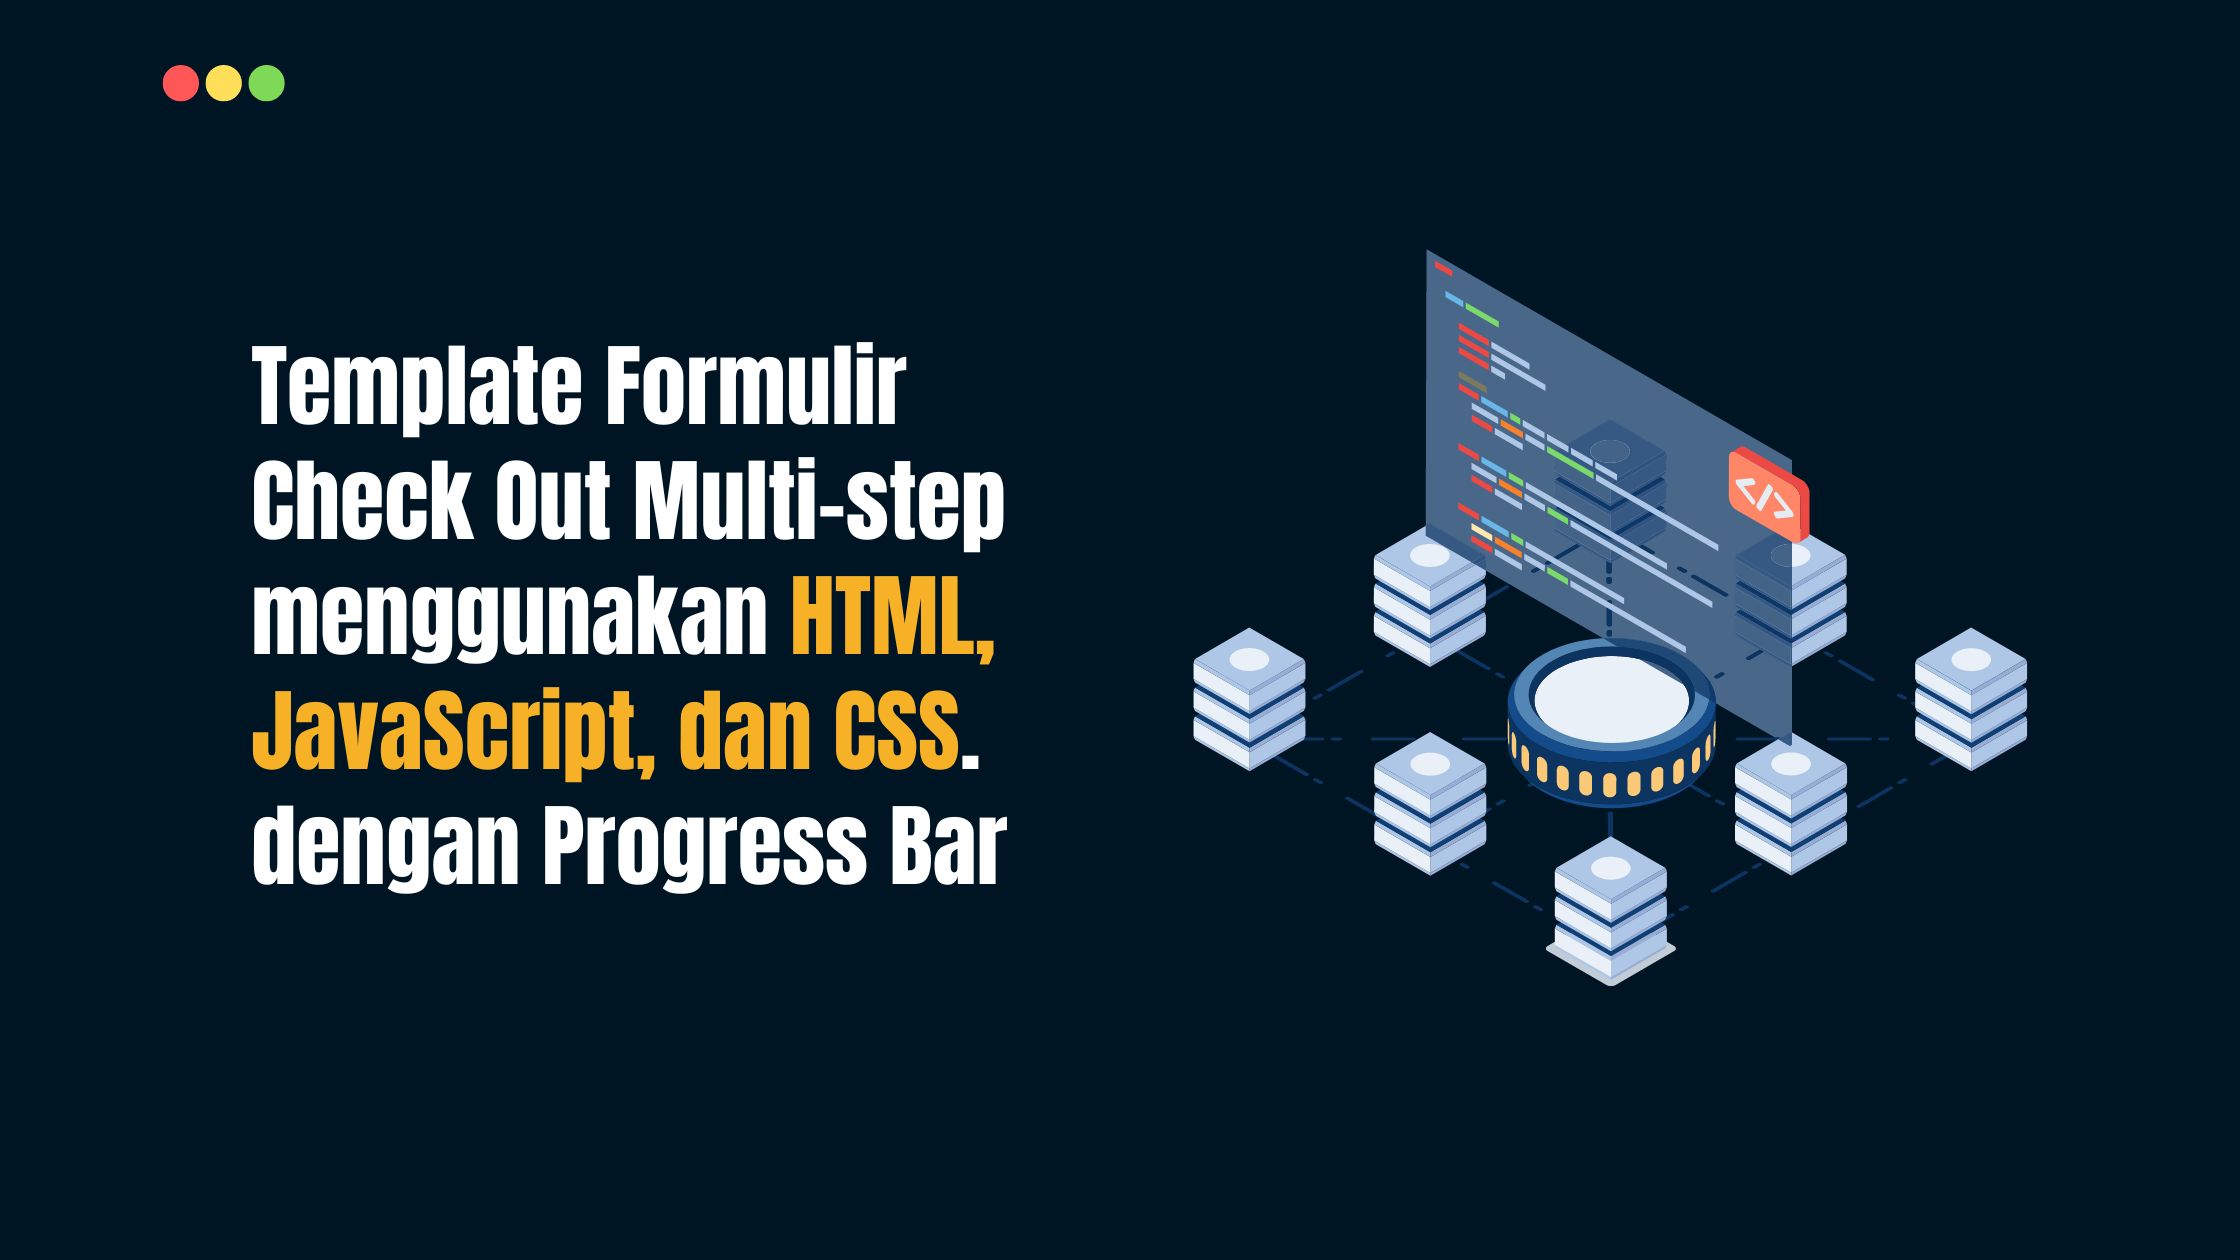 Template Formulir Check Out Multi-step menggunakan HTML, JavaScript, dan CSS dengan Progress Bar